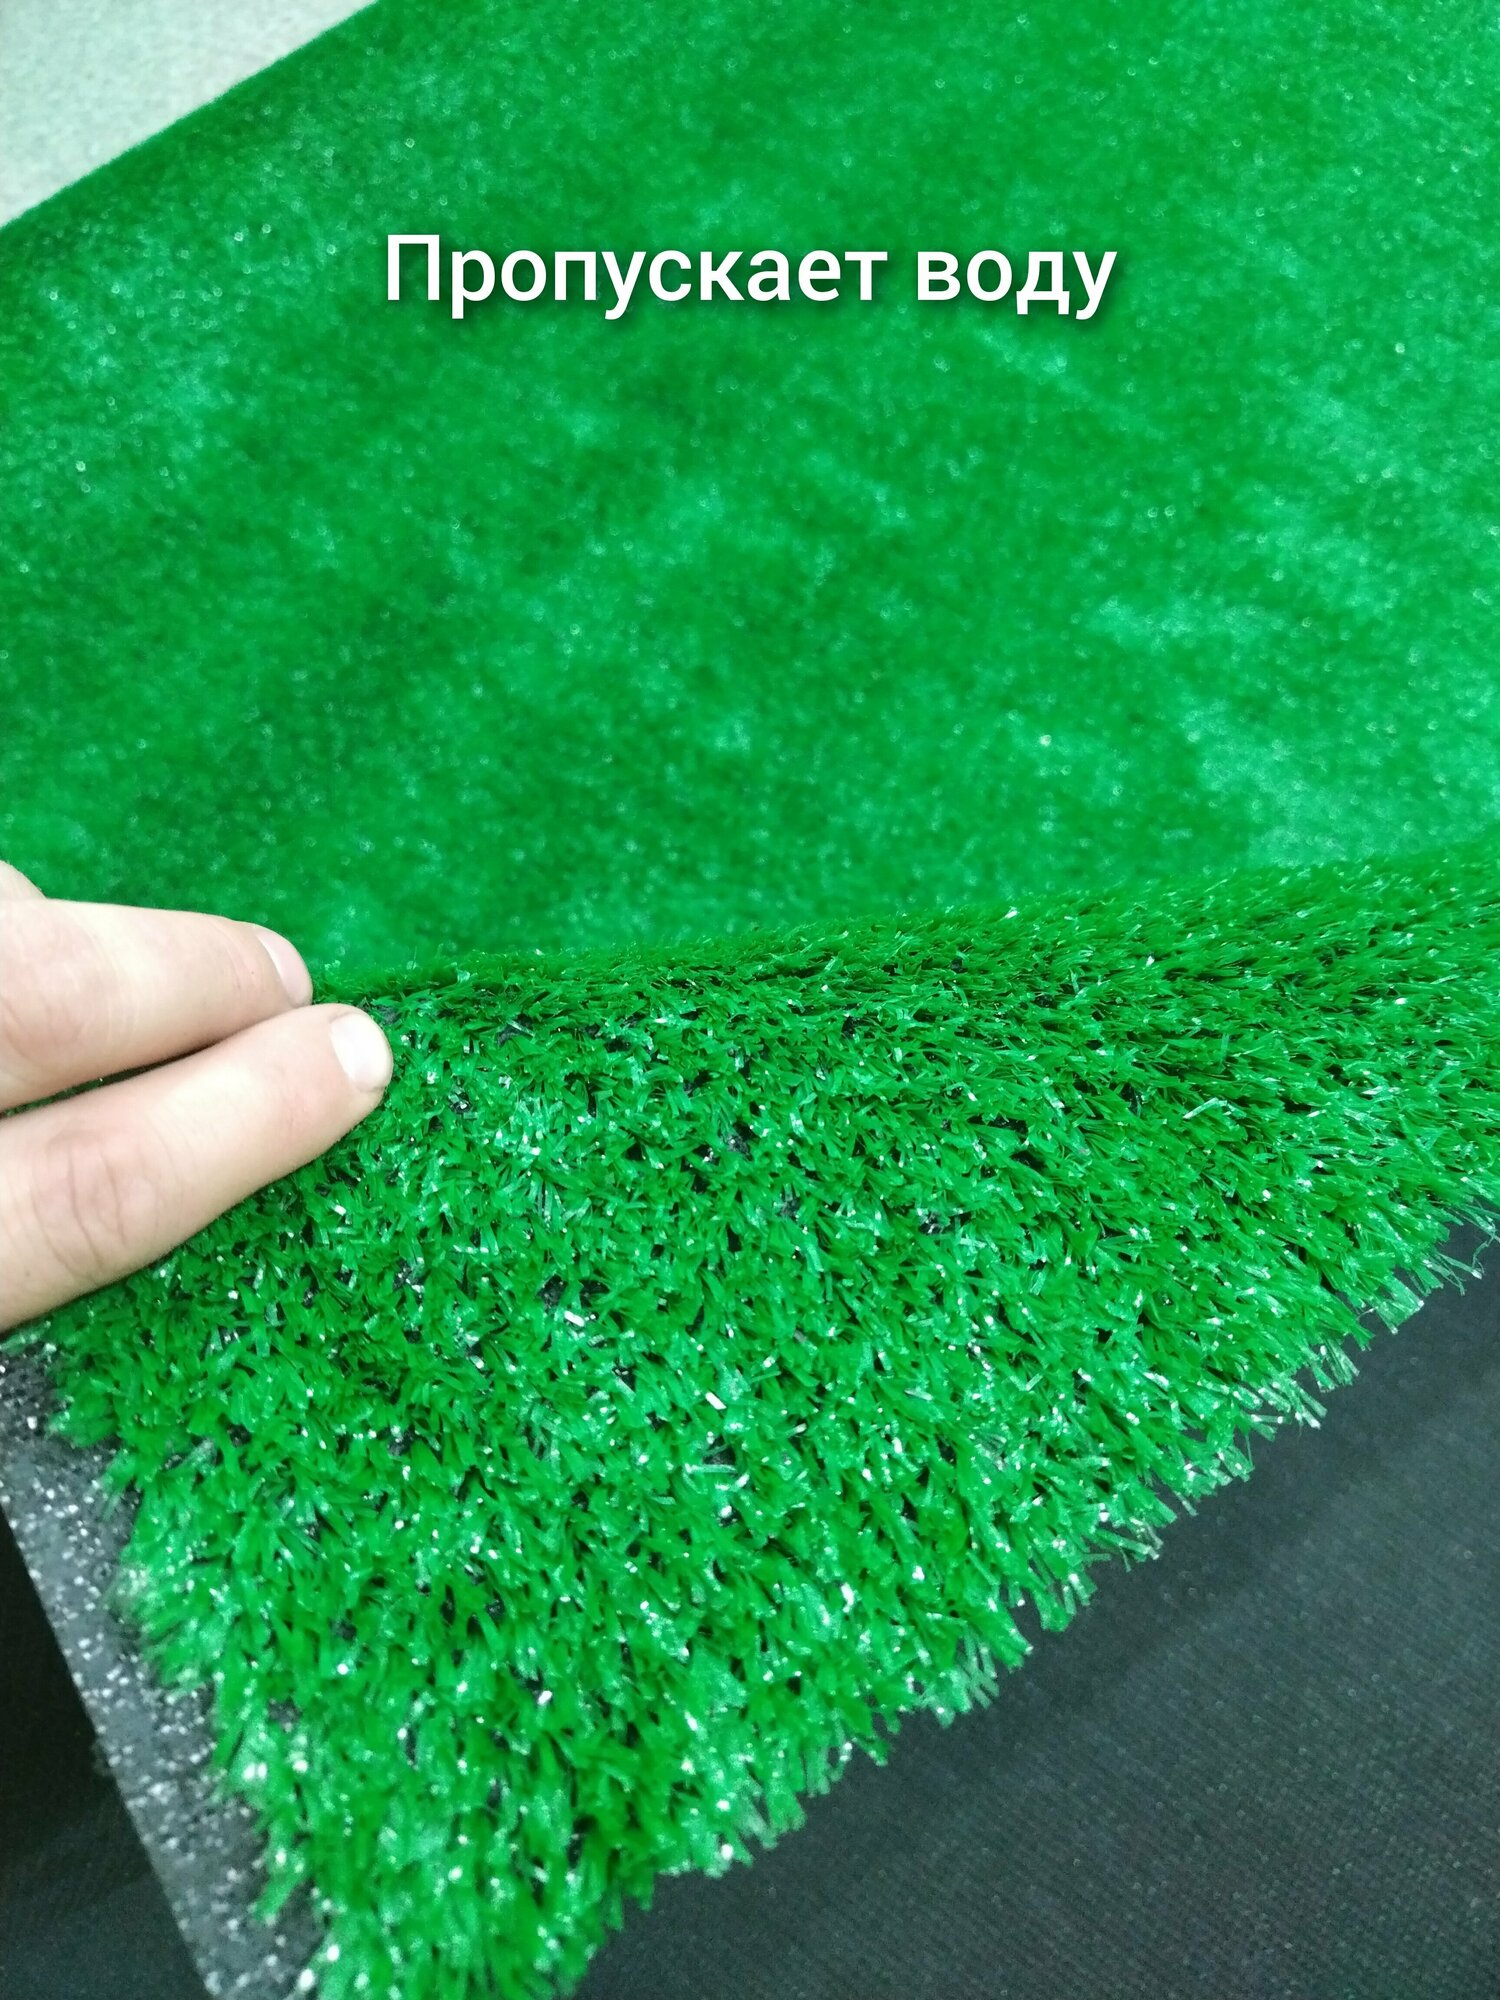 Газон искусственный 1 на 2.1 (высота ворса 10мм) искусственная трава, декоративная трава